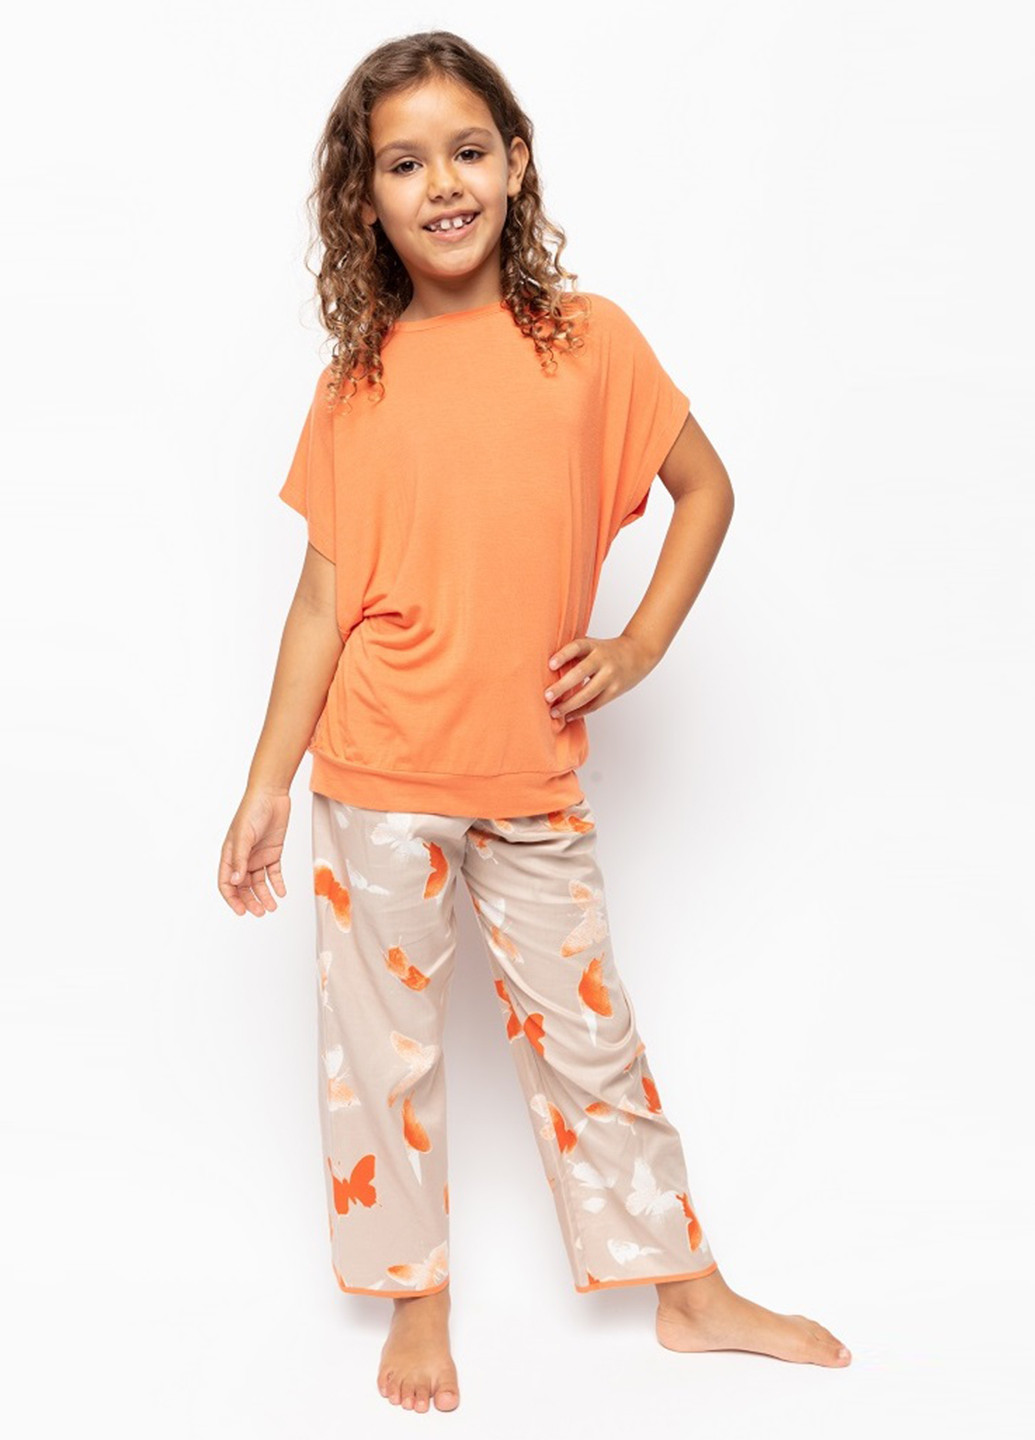 Оранжевая всесезон пижама (футболка, брюки) футболка + брюки Cyberjammies